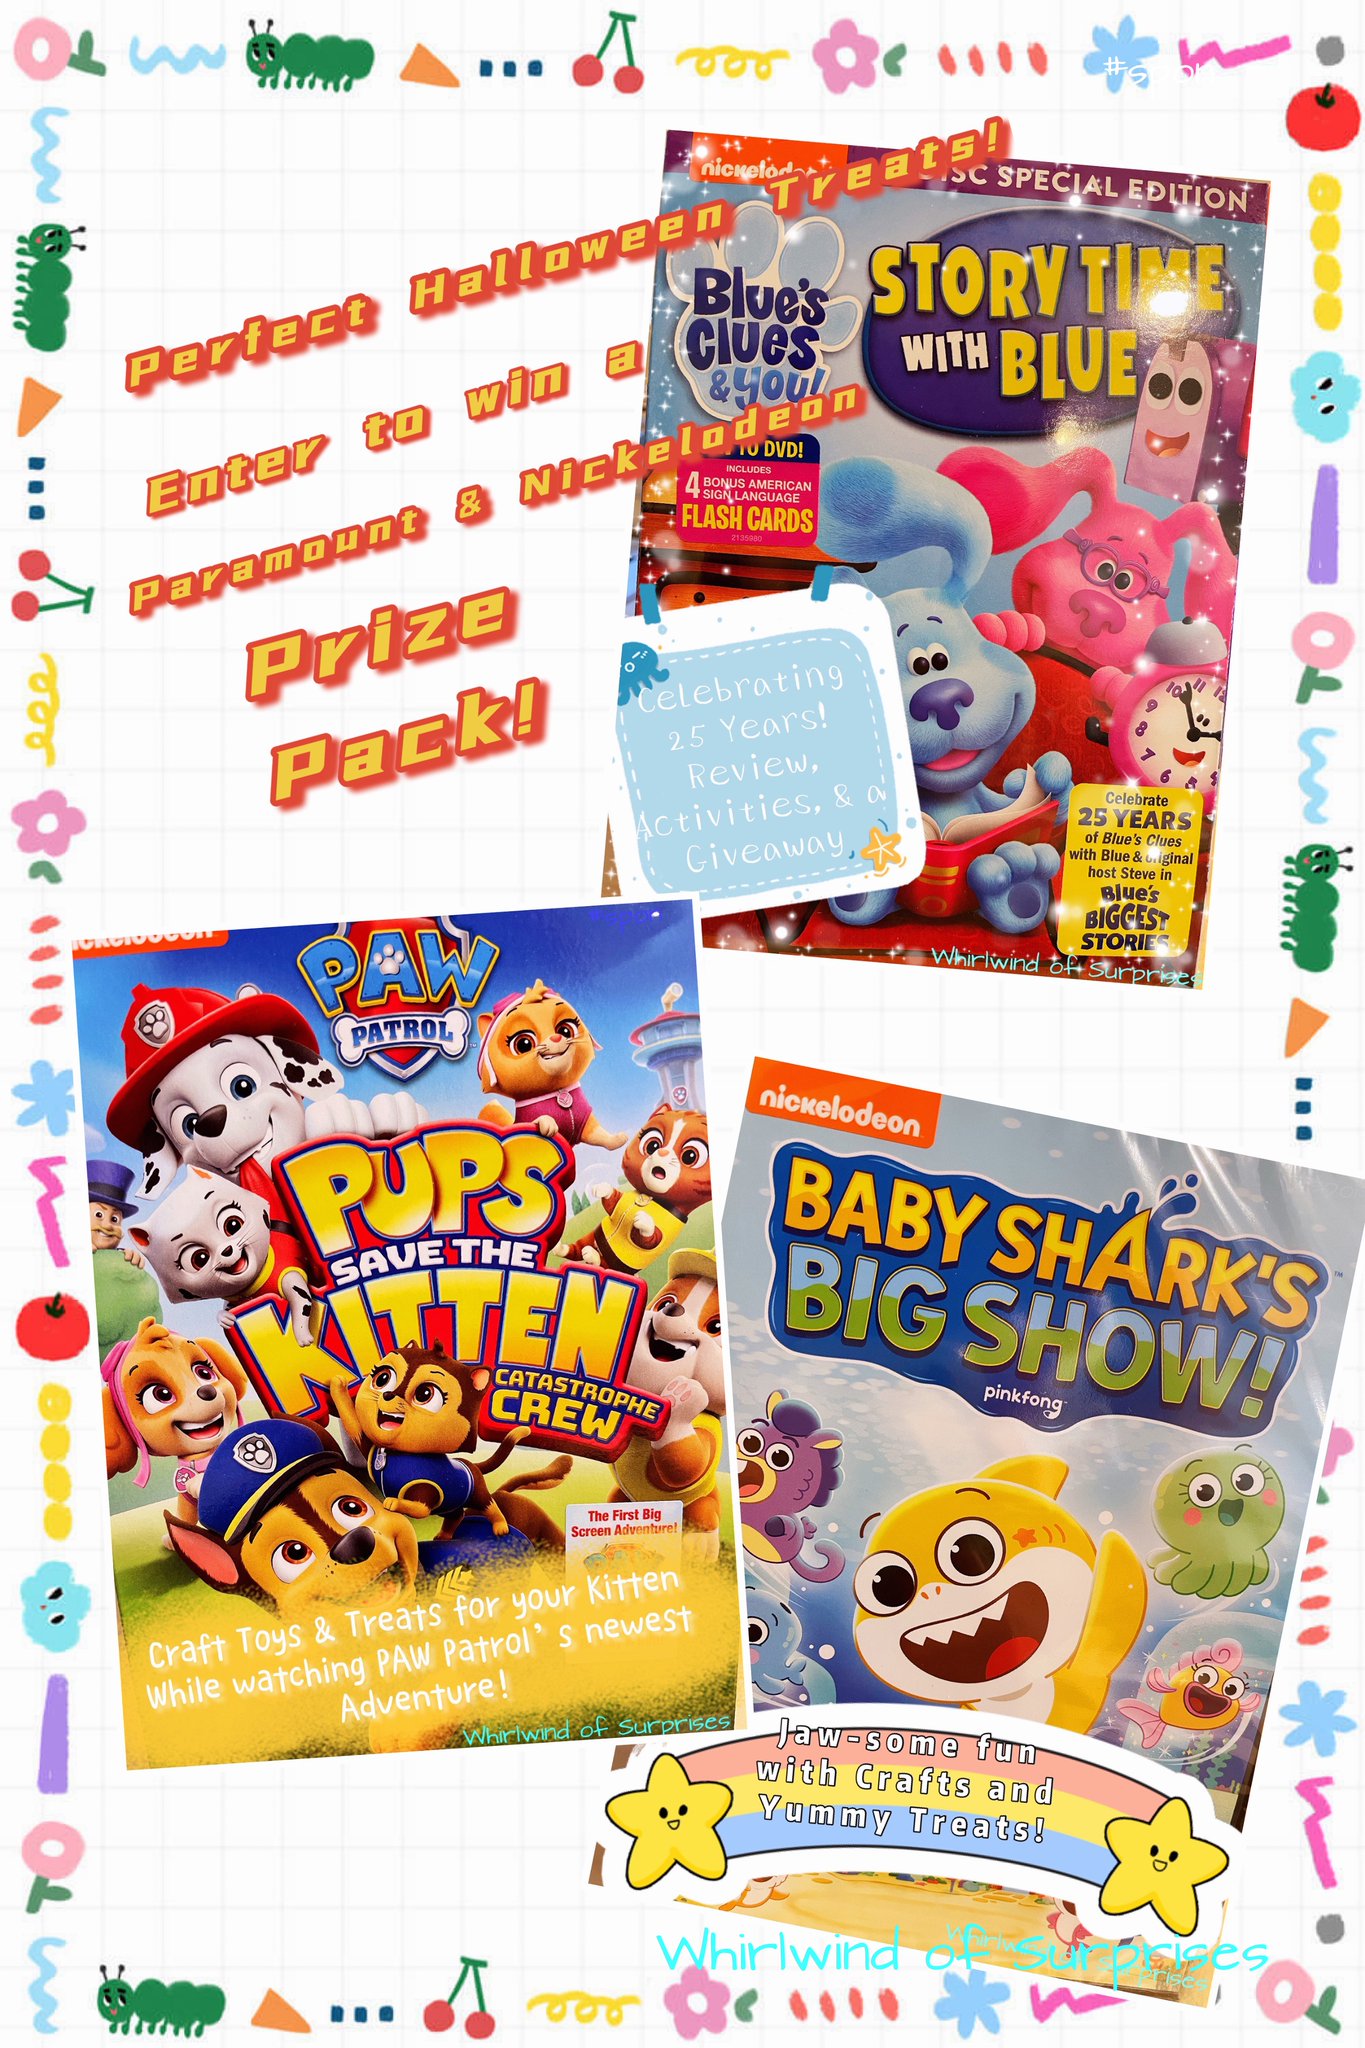 Preschool DVD Giveaway